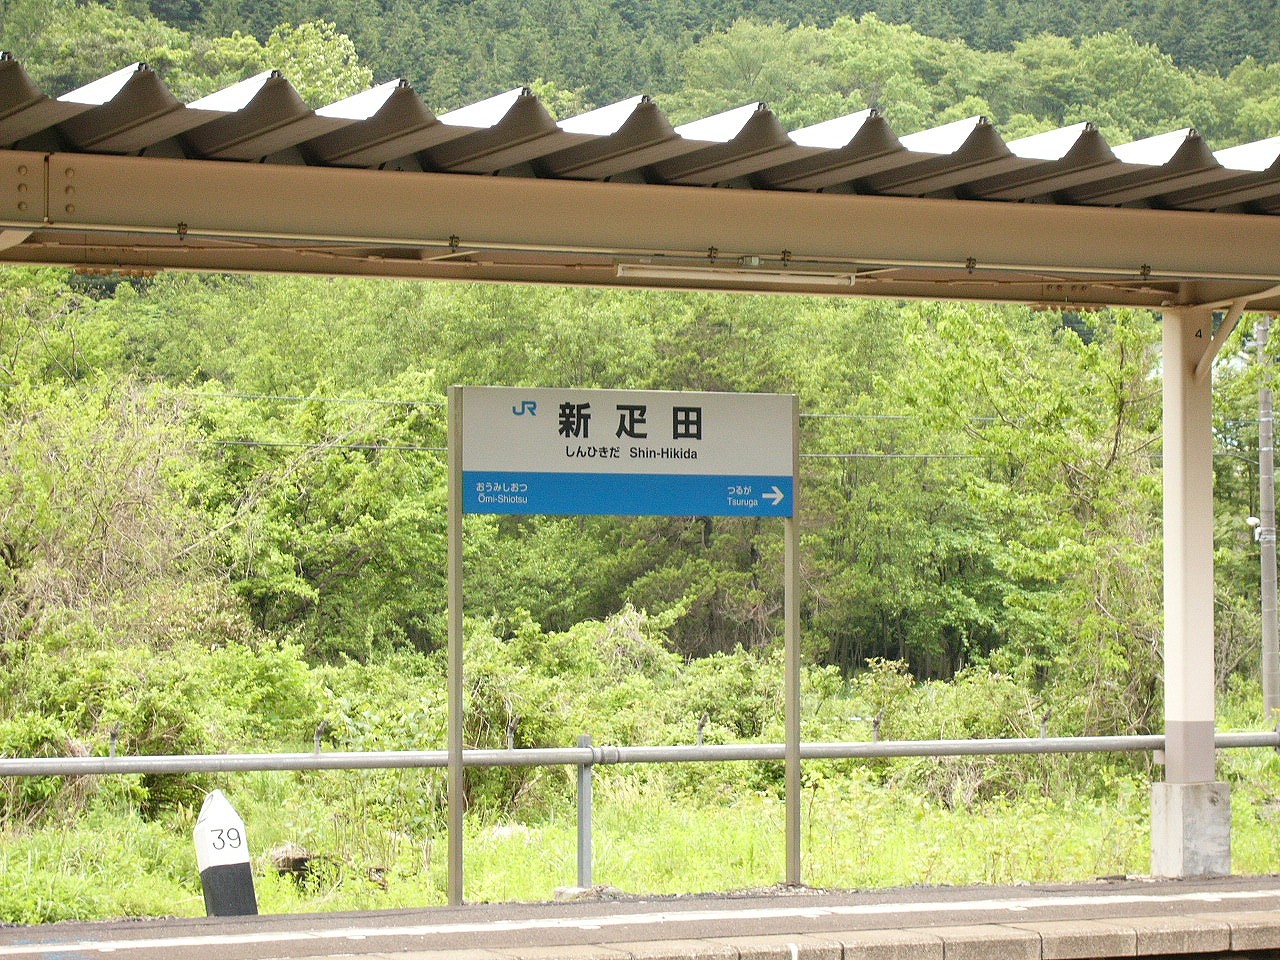 横に長い長方形に長い足が2つついたJR西日本仕様の駅名標